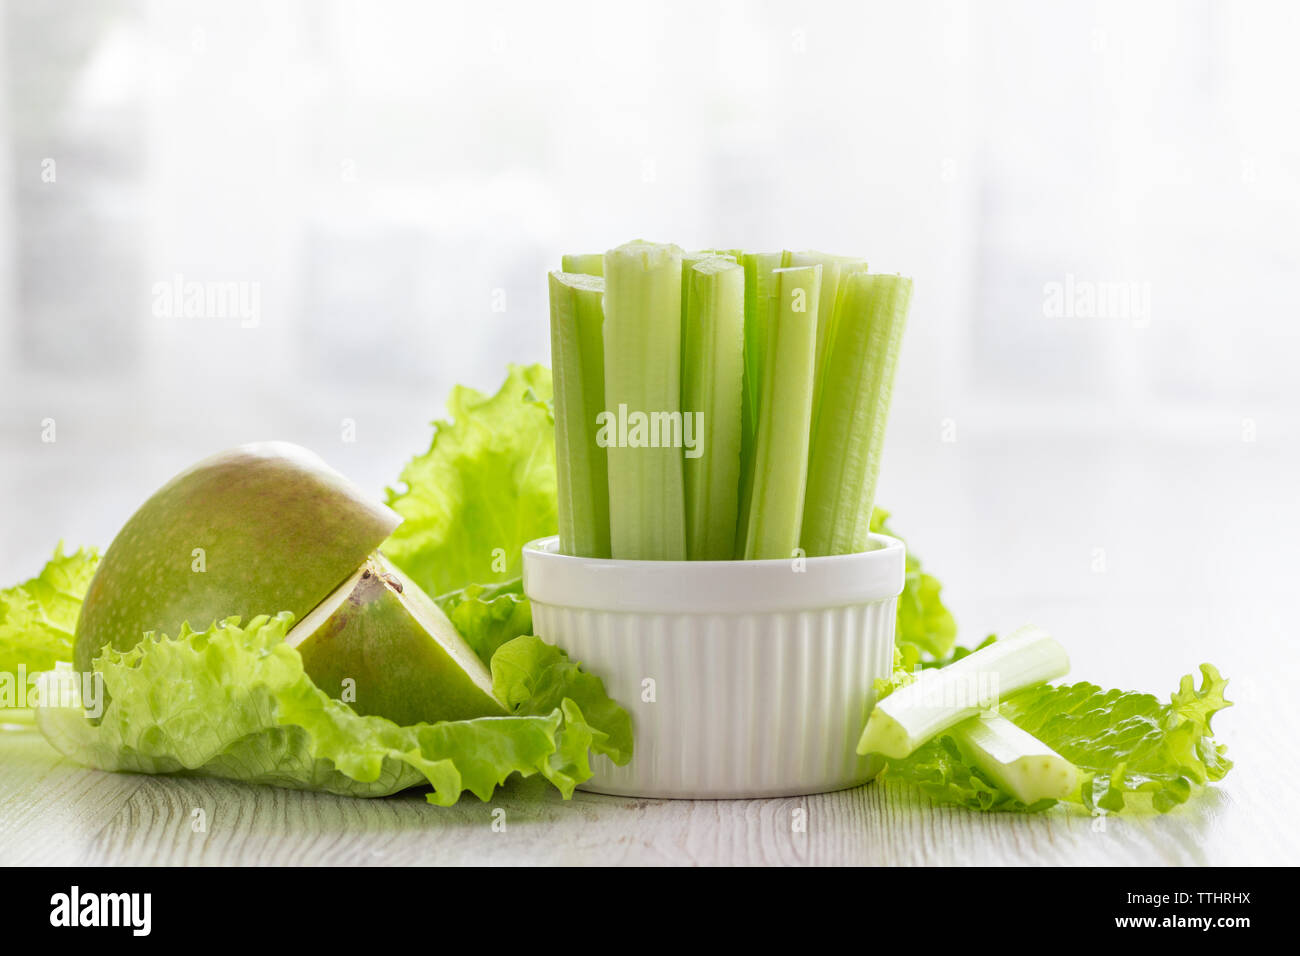 Concepto de comida saludable vegetariana. Verde apio, hojas de lechuga y aplle. Foto de stock